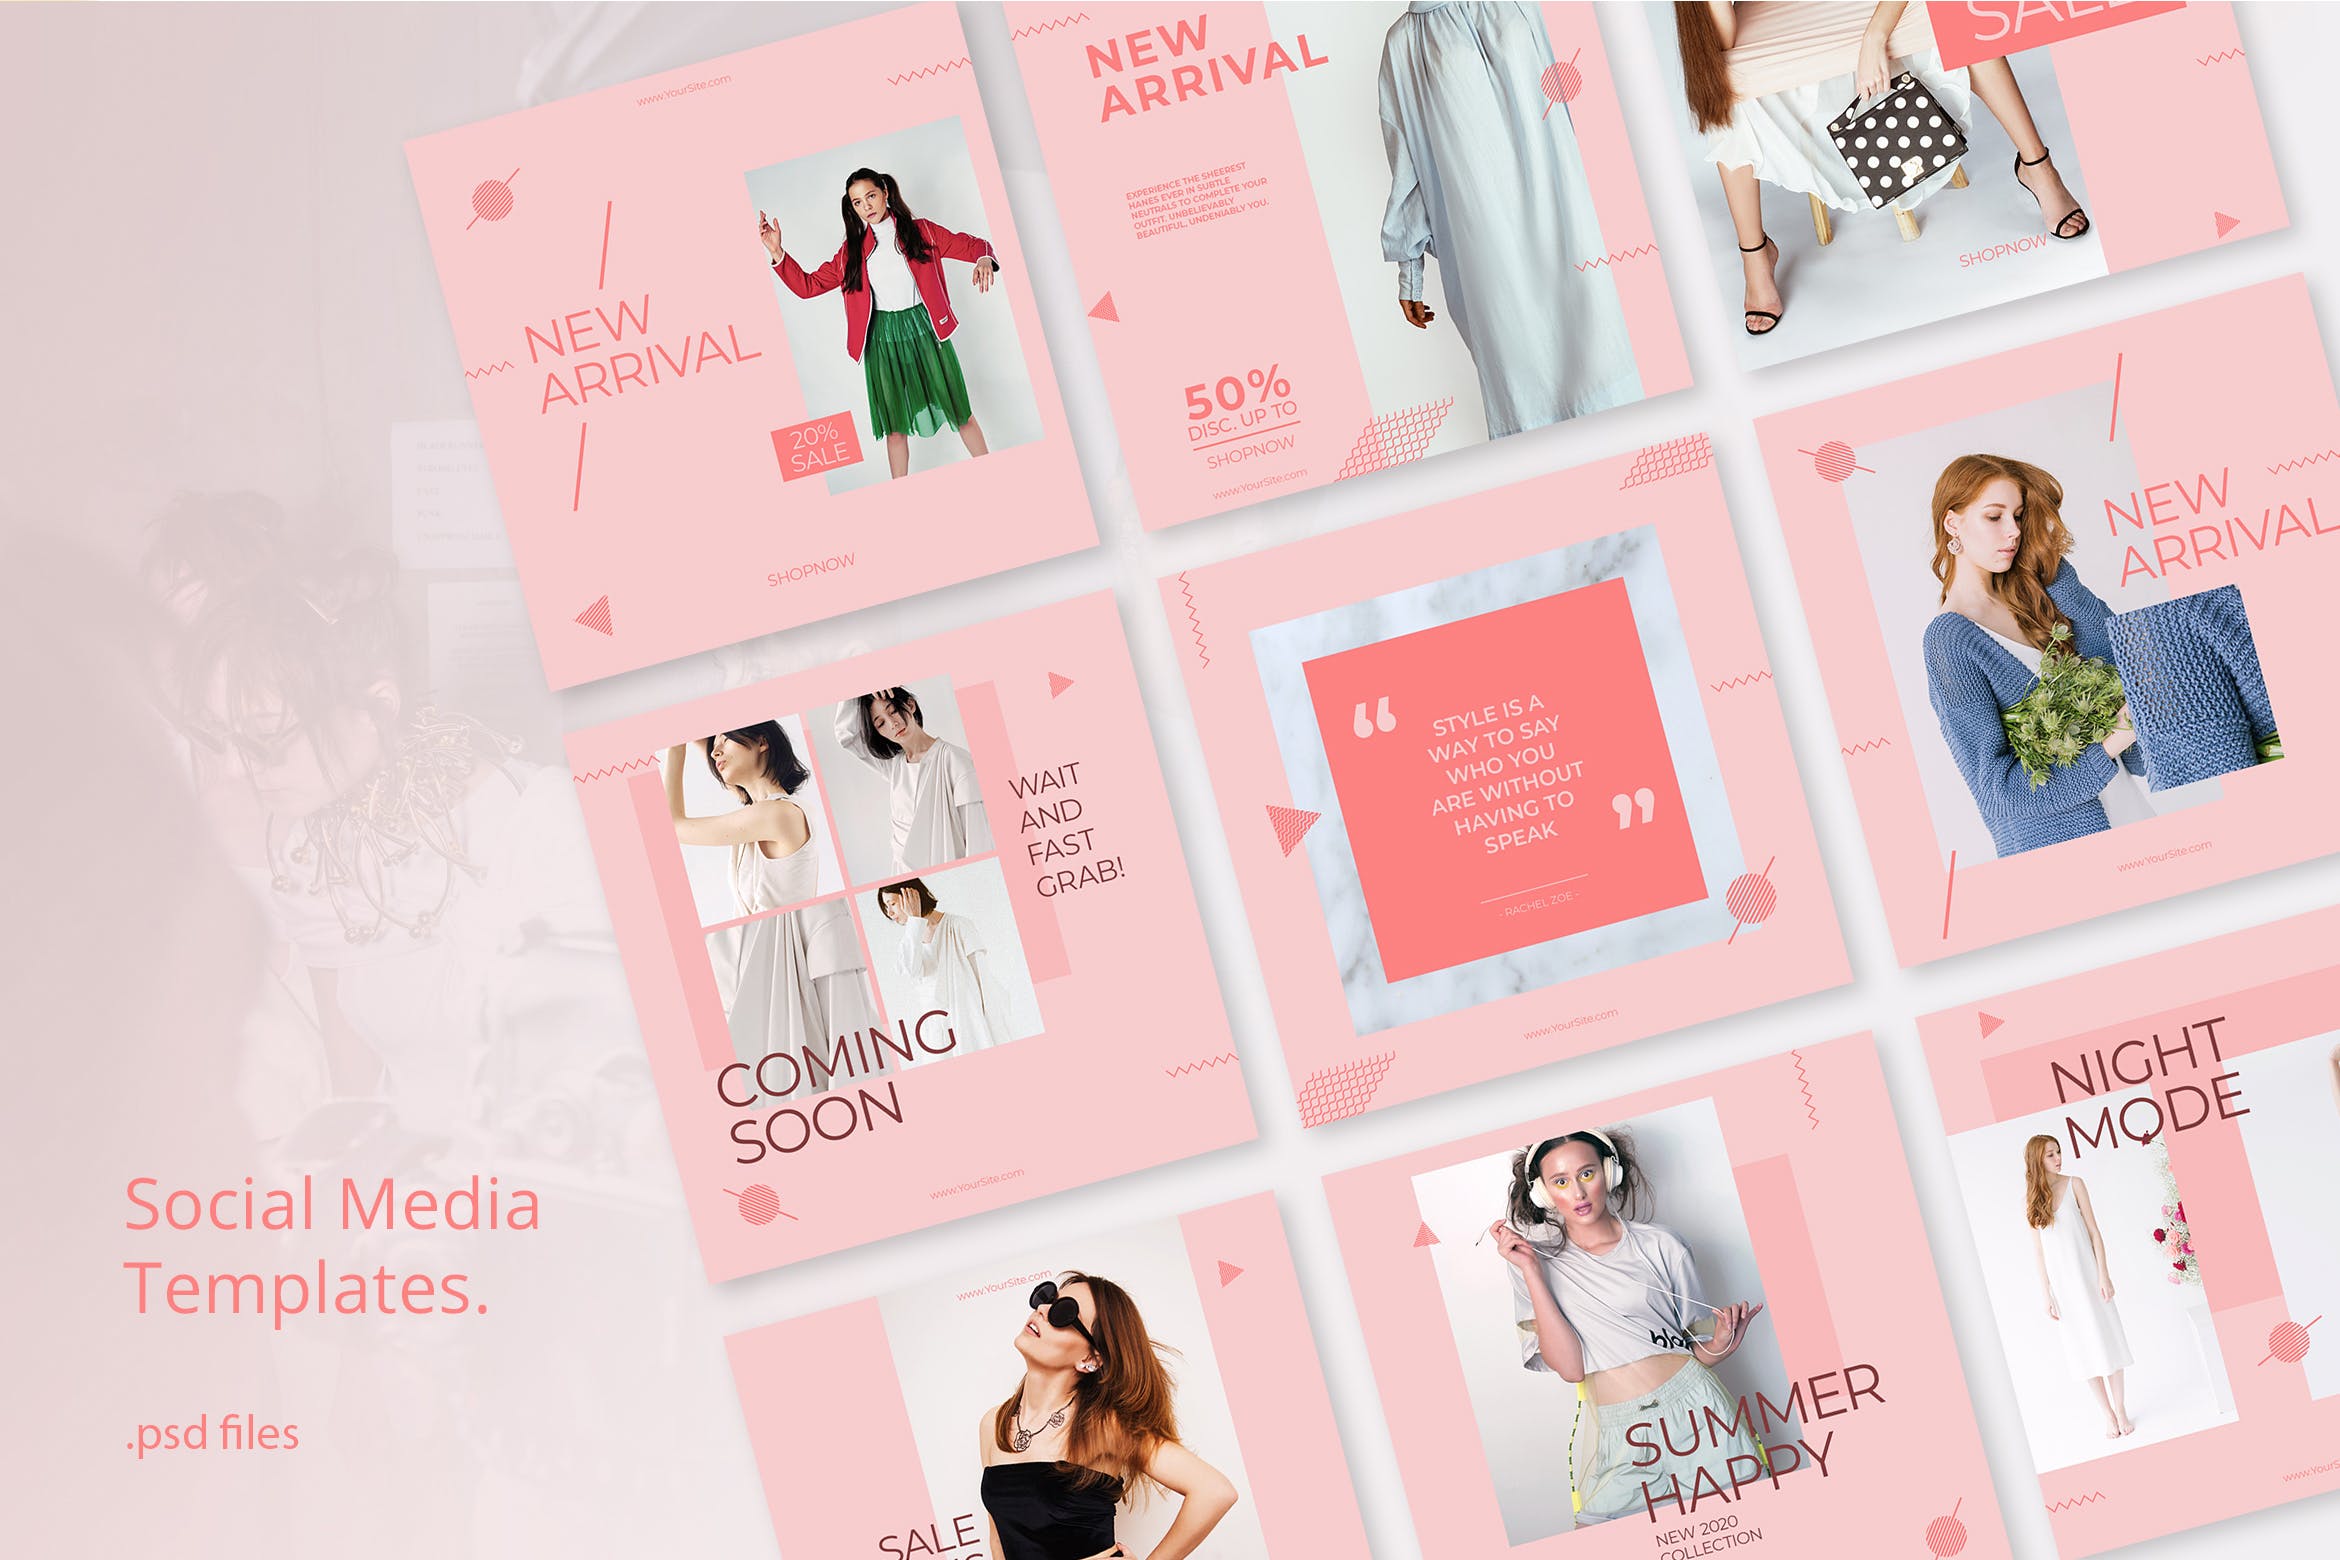 极简主义设计风格时尚主题社交媒体推广素材包 Social Media Kit Fashion Minimalis插图